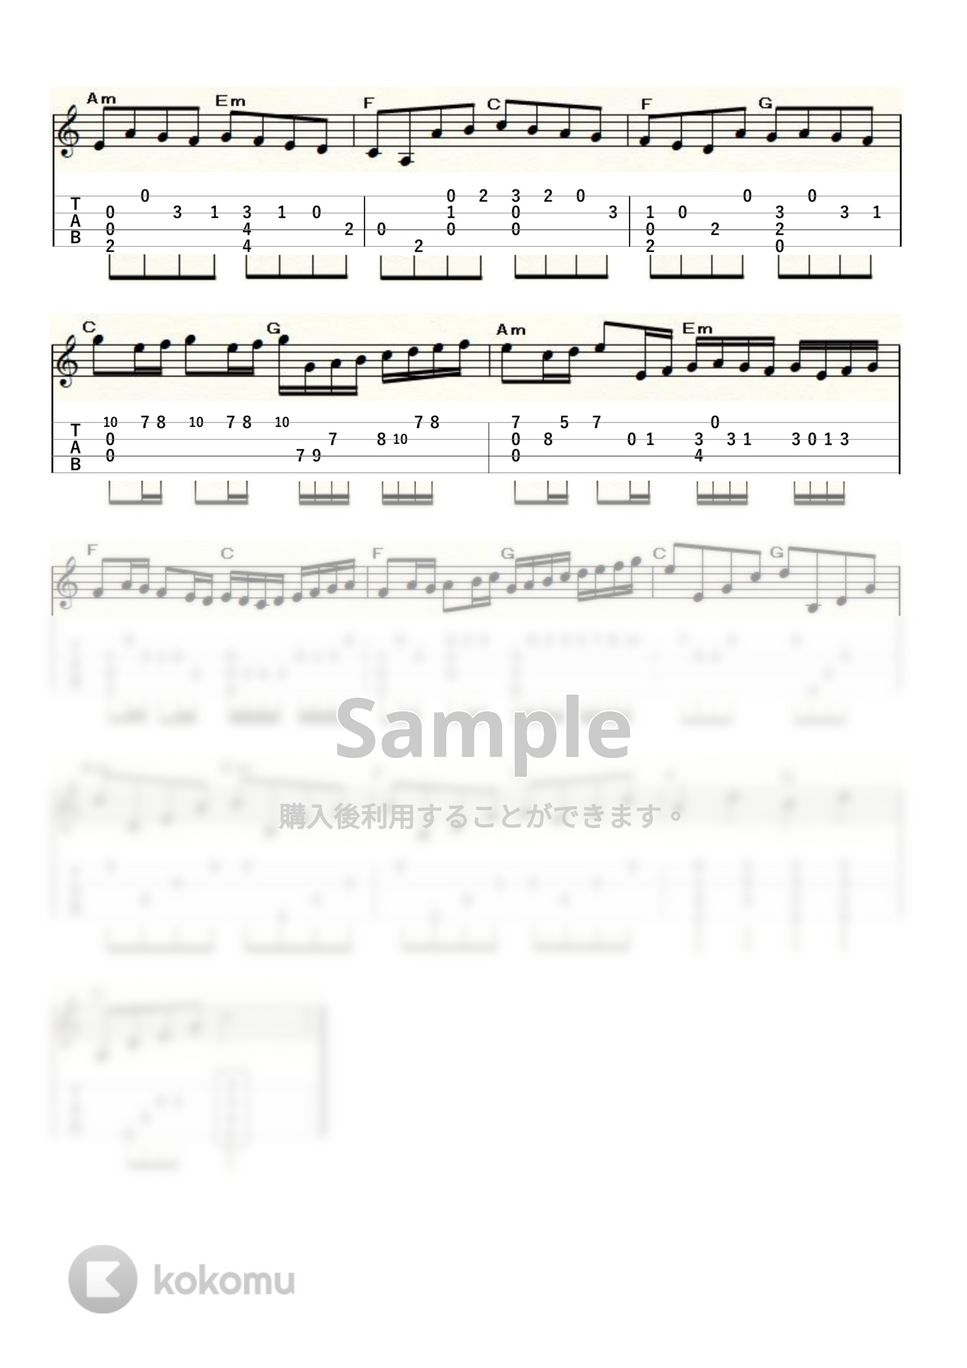 パッヘルベル - パッヘルベルのカノン (ｳｸﾚﾚｿﾛ / Low-G / 中級) by ukulelepapa